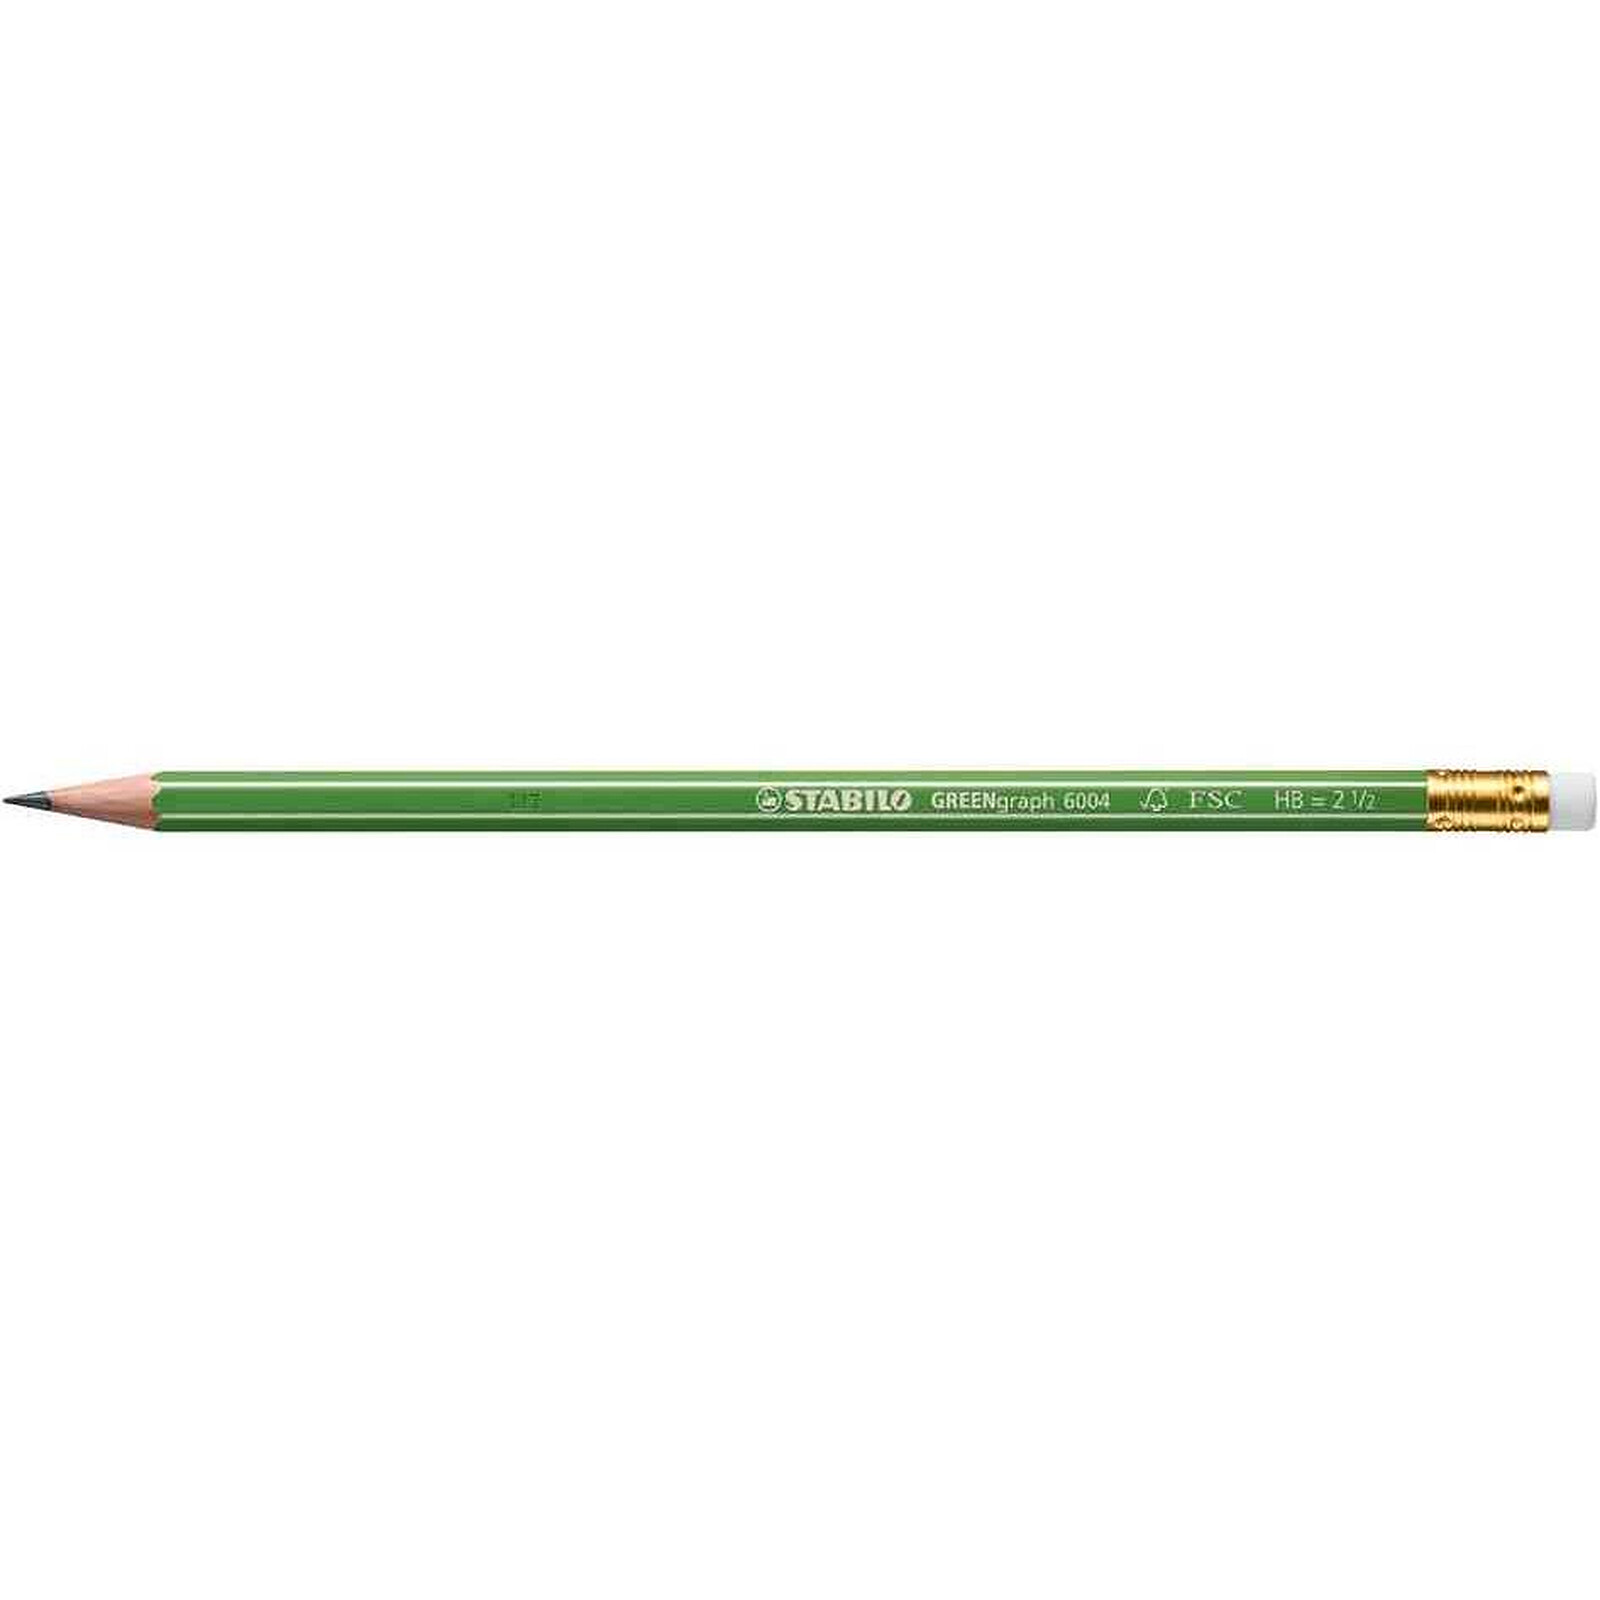 Orange STABILO pencil 160 Lot de 12 crayons graphite 2B avec bout gomme 